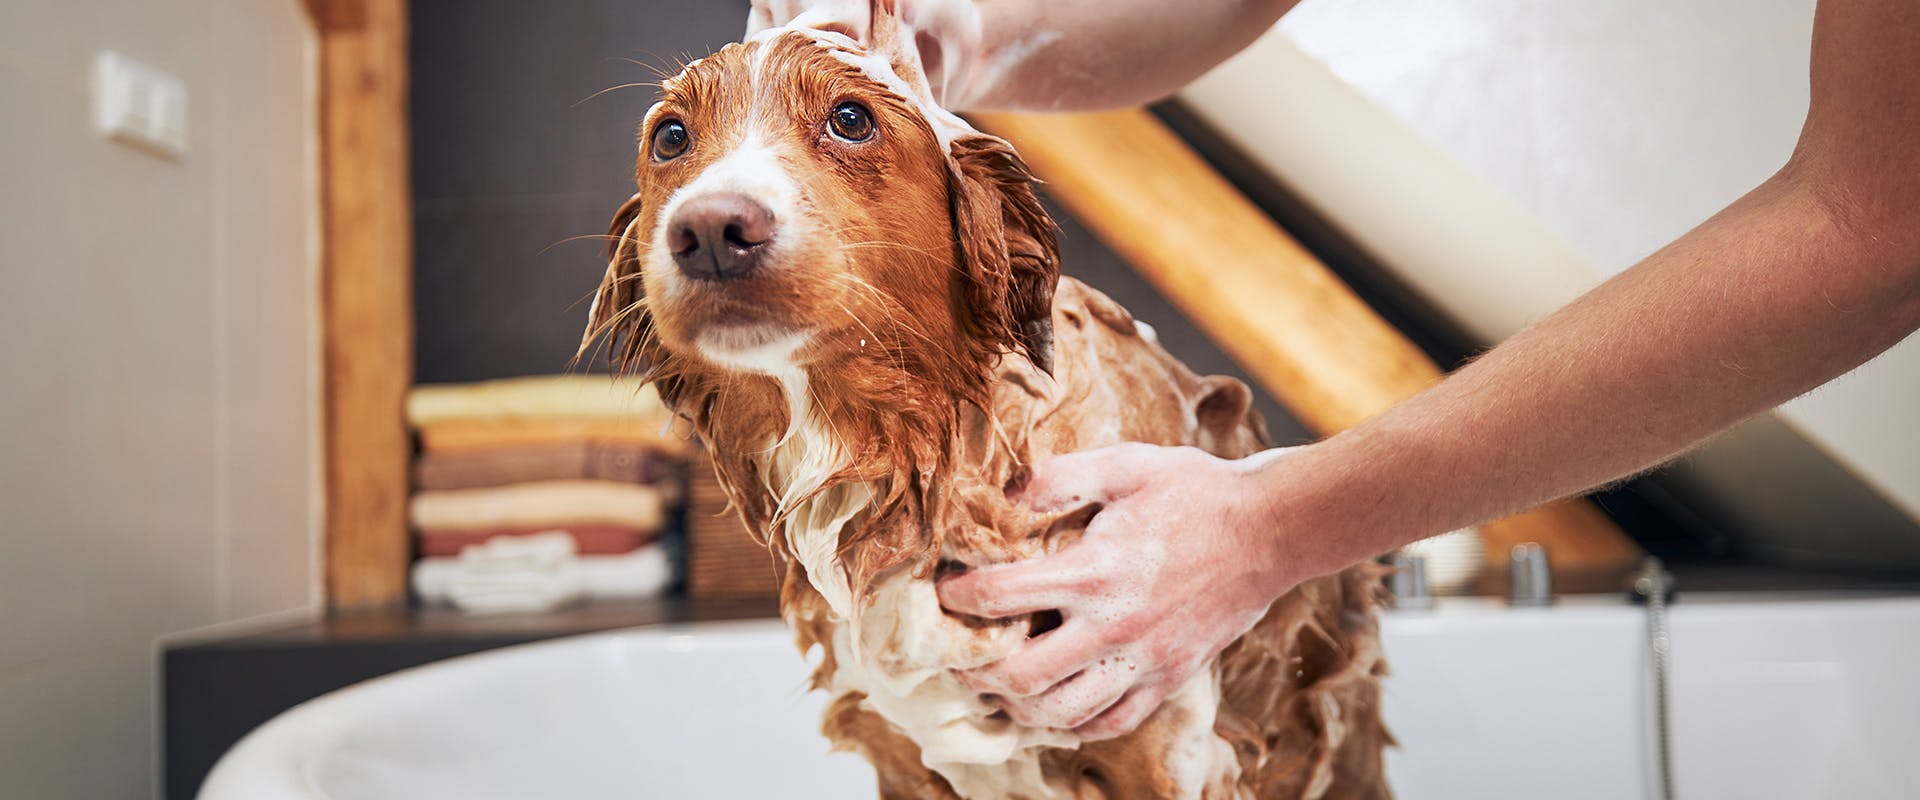 A person washing a dog in the bath tub